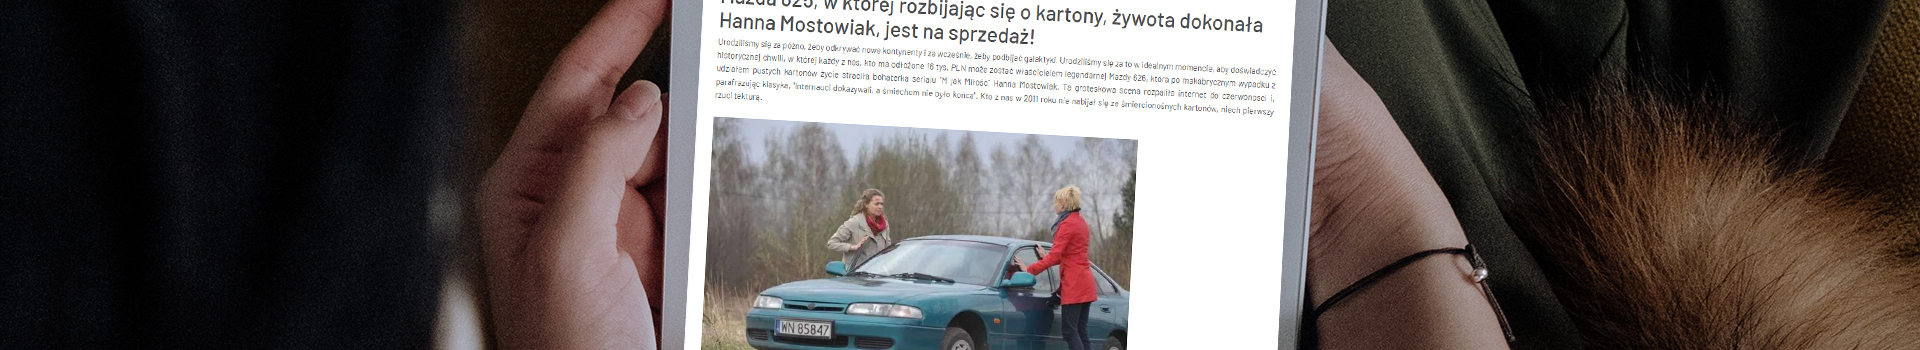 Samochód, który zna cała Polska, jest na sprzedaż!